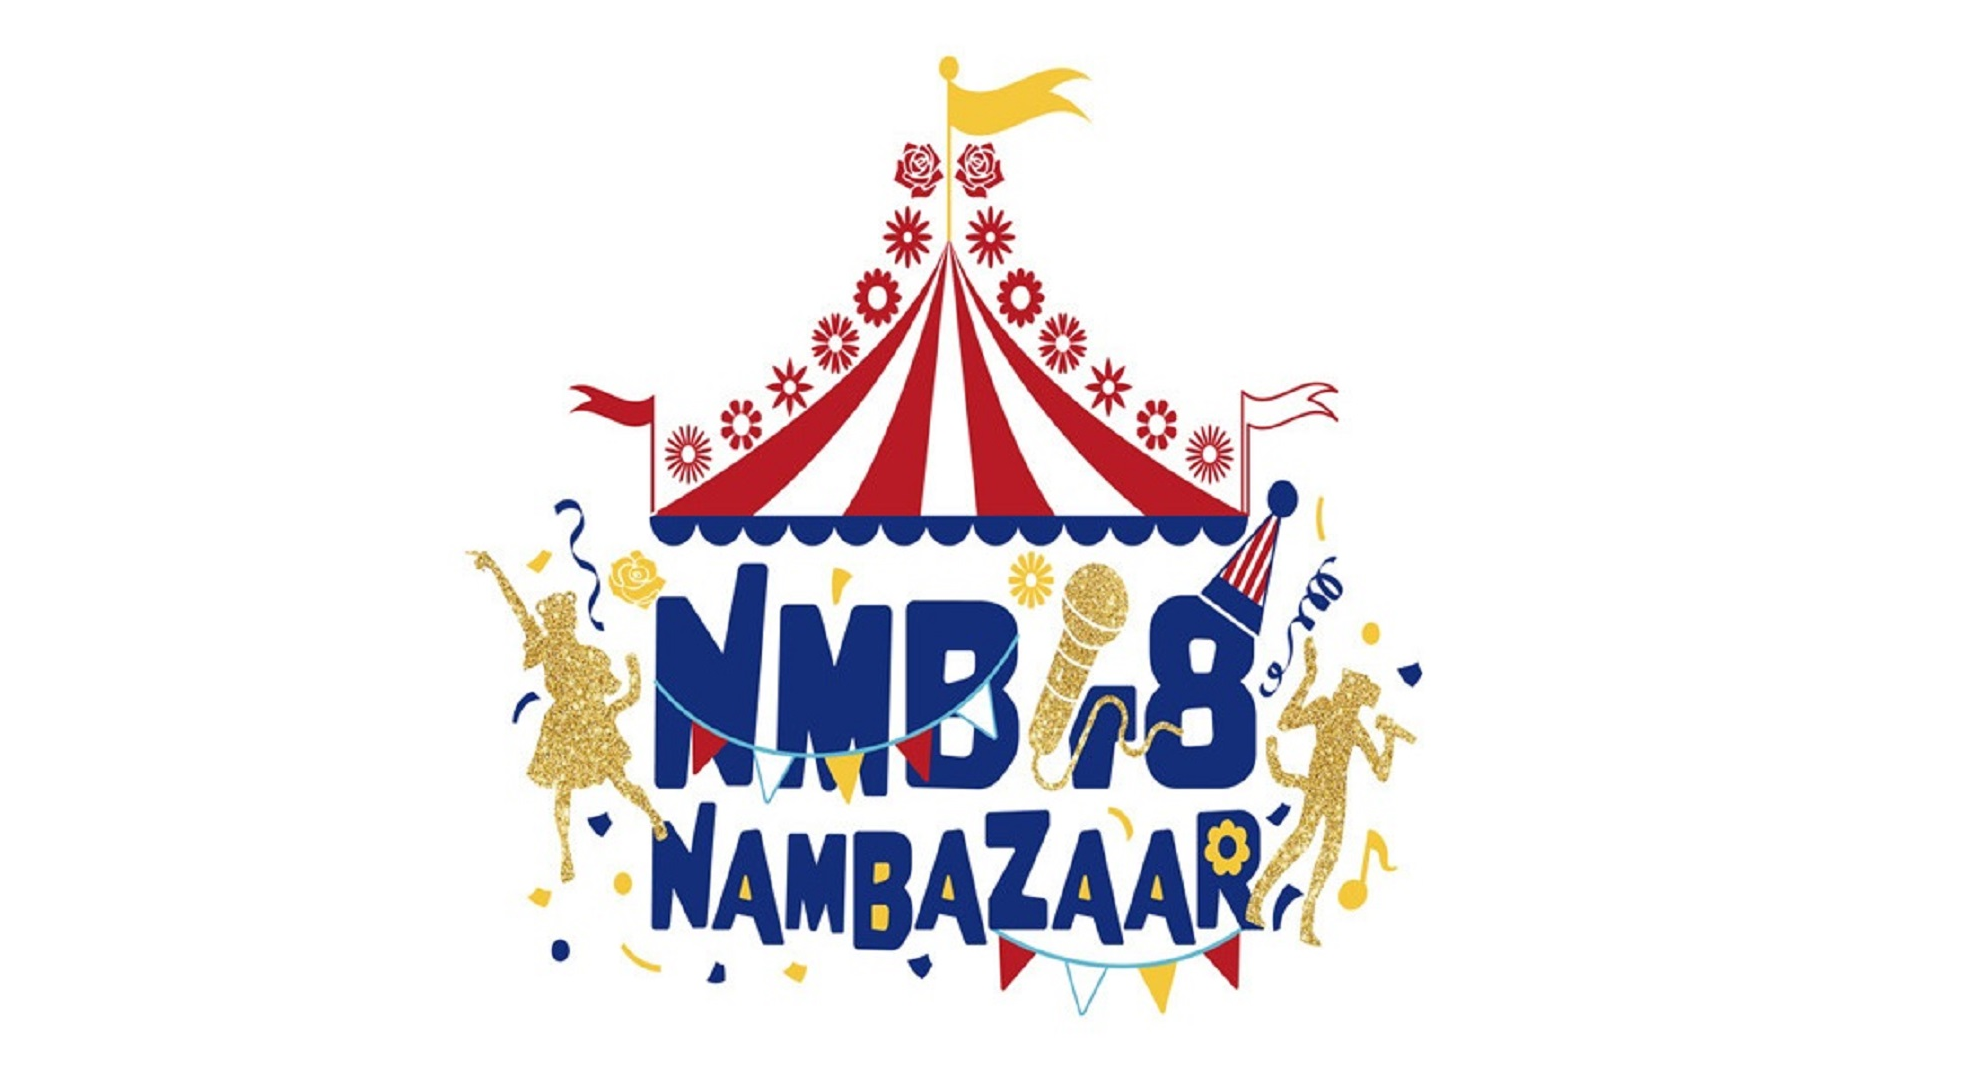 NMB48 NAMBAZAAR 生中継